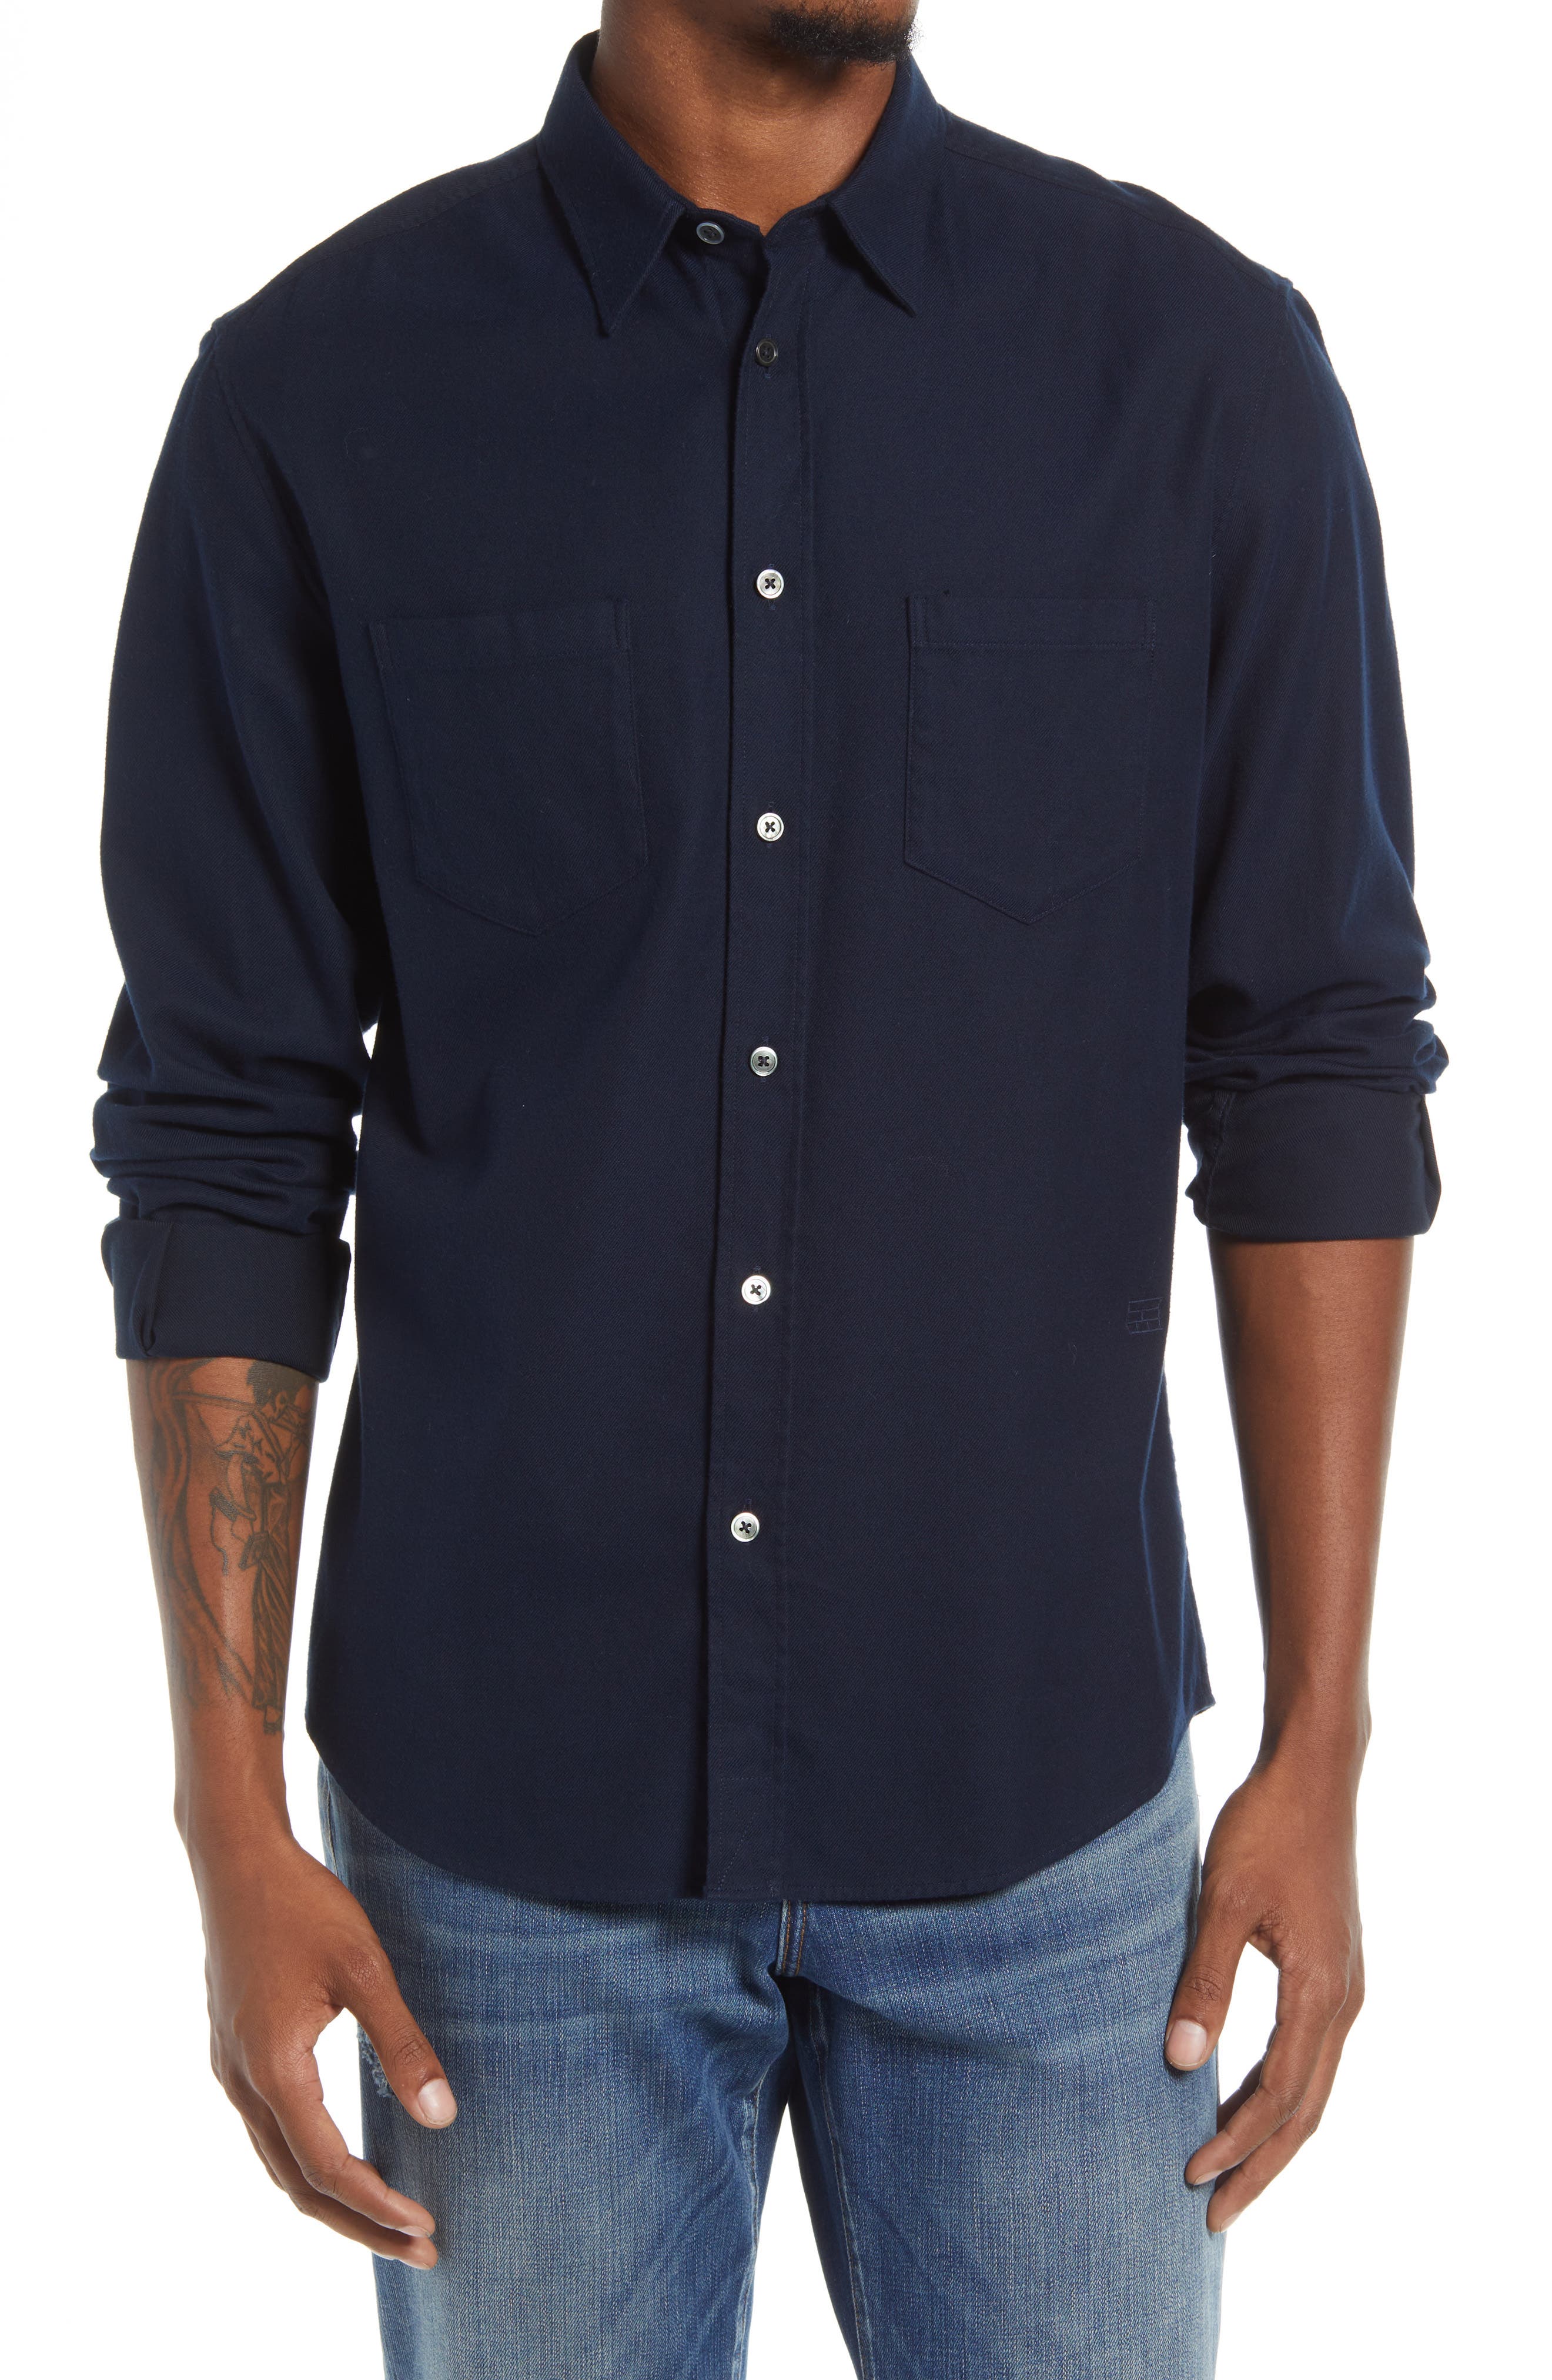 navy blue button down shirt